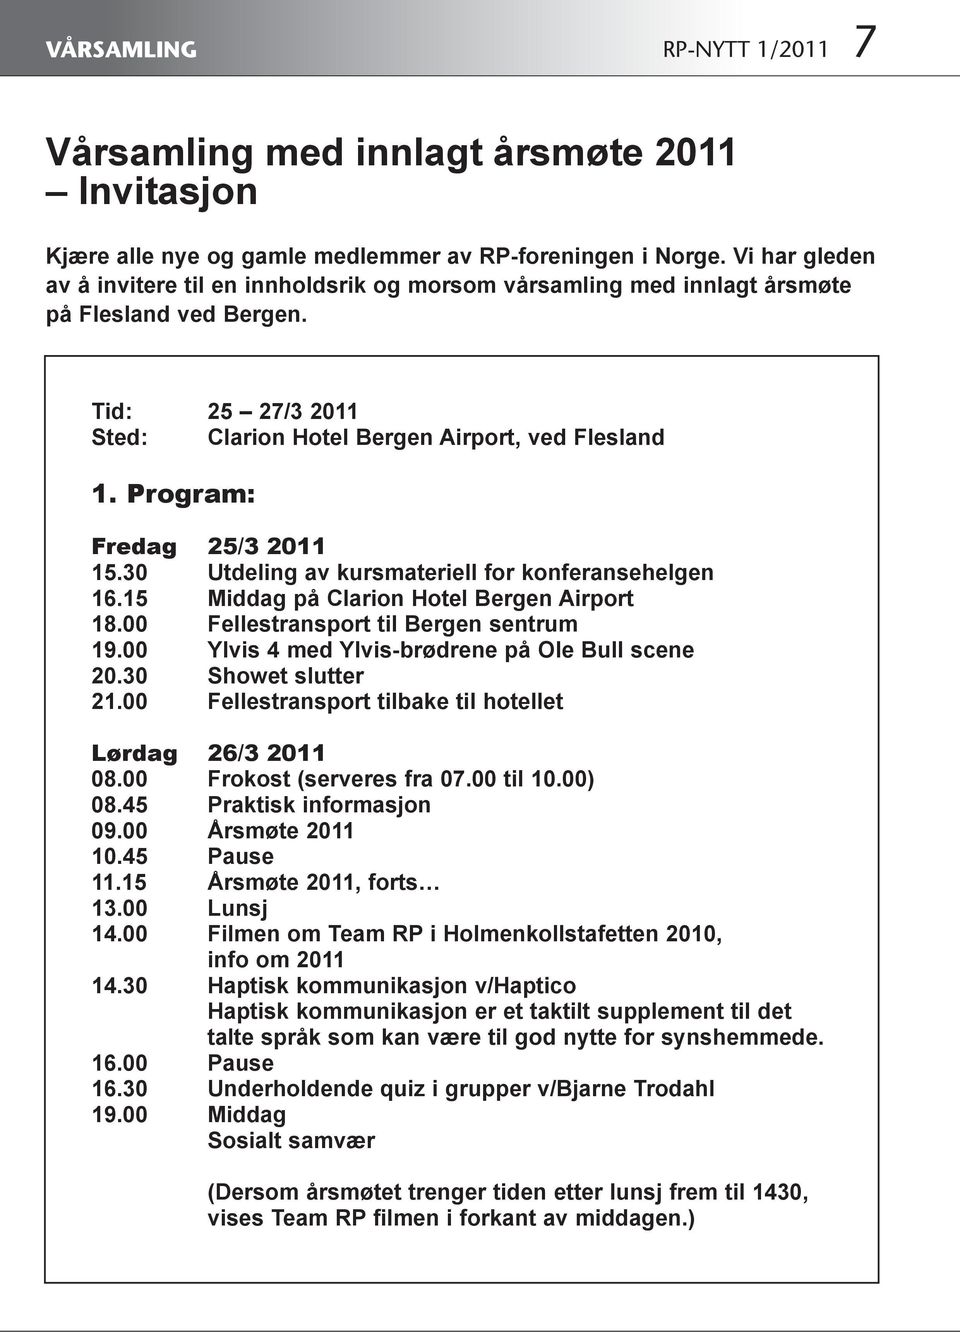 Program: Fredag 25/3 2011 15.30 Utdeling av kursmateriell for konferansehelgen 16.15 Middag på Clarion Hotel Bergen Airport 18.00 Fellestransport til Bergen sentrum 19.